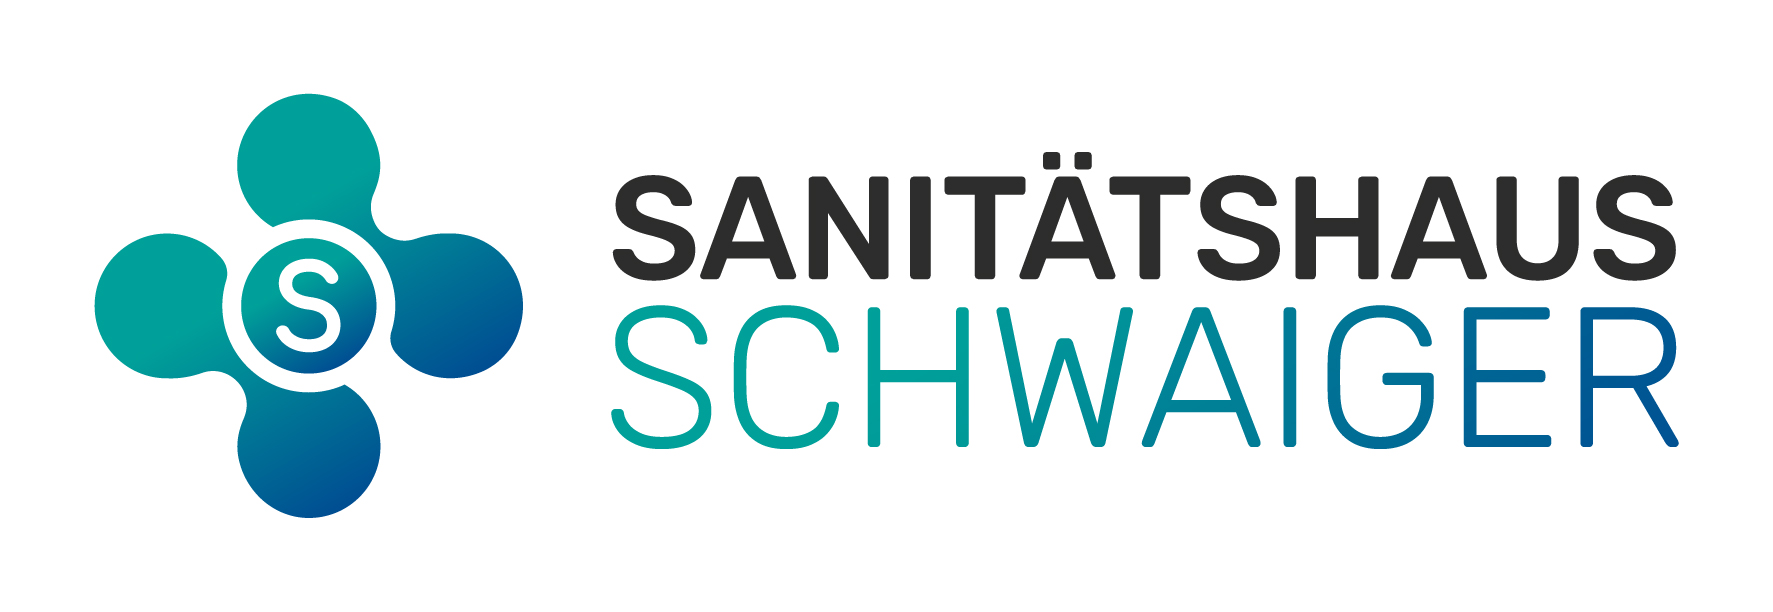 Bild 4 Sanitätshaus Schwaiger GmbH in München